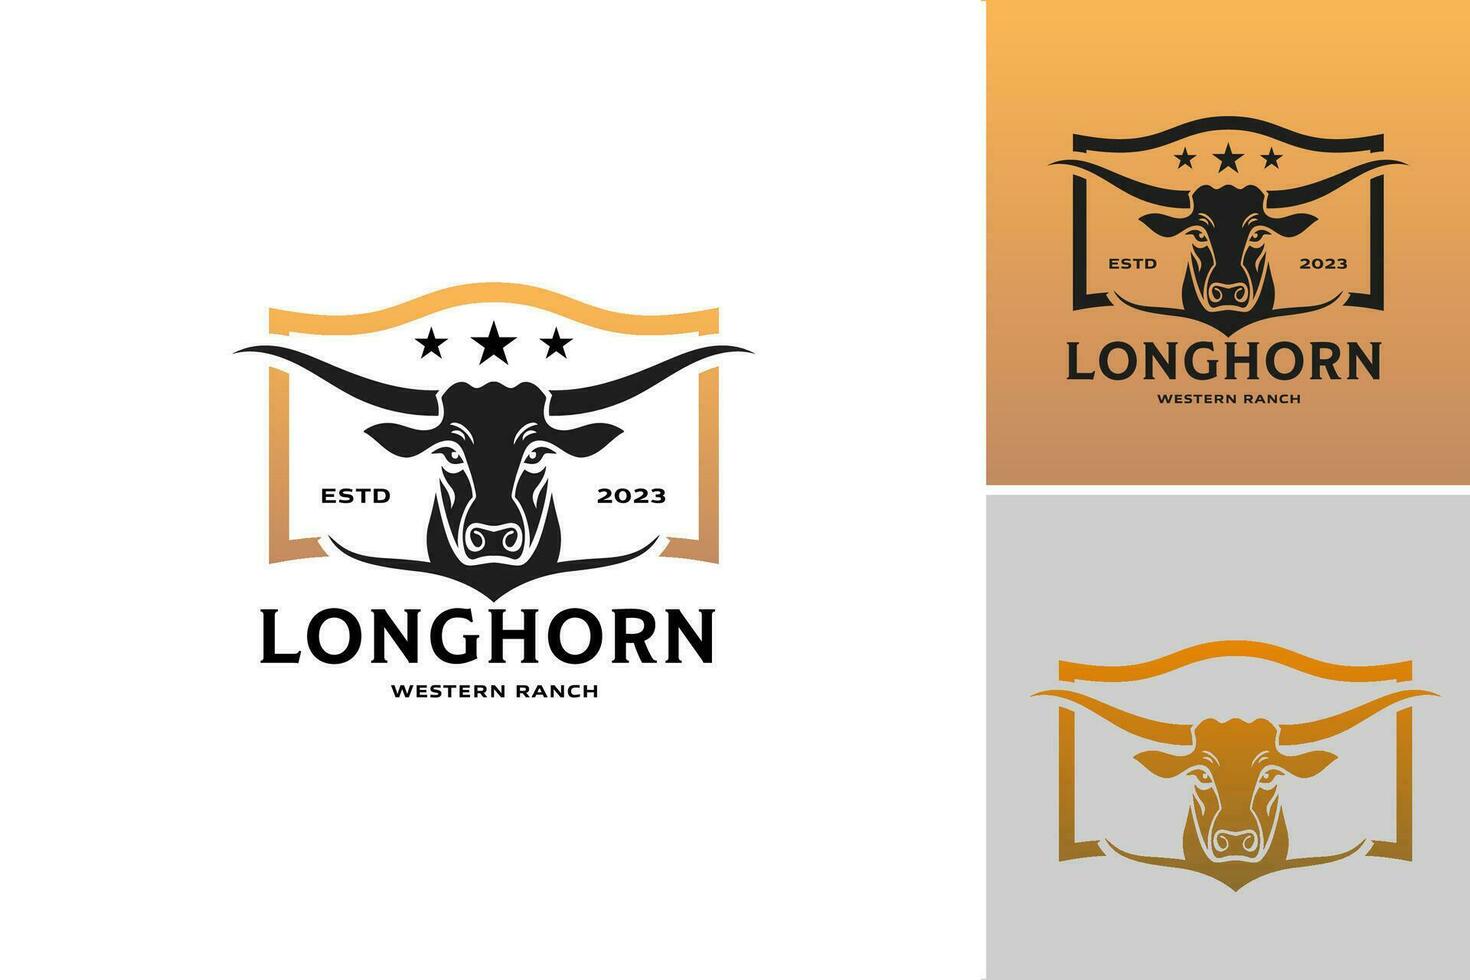 Longhorn occidental rancho logo es un diseño activo ese representa un logo inspirado por el occidental tema, vector